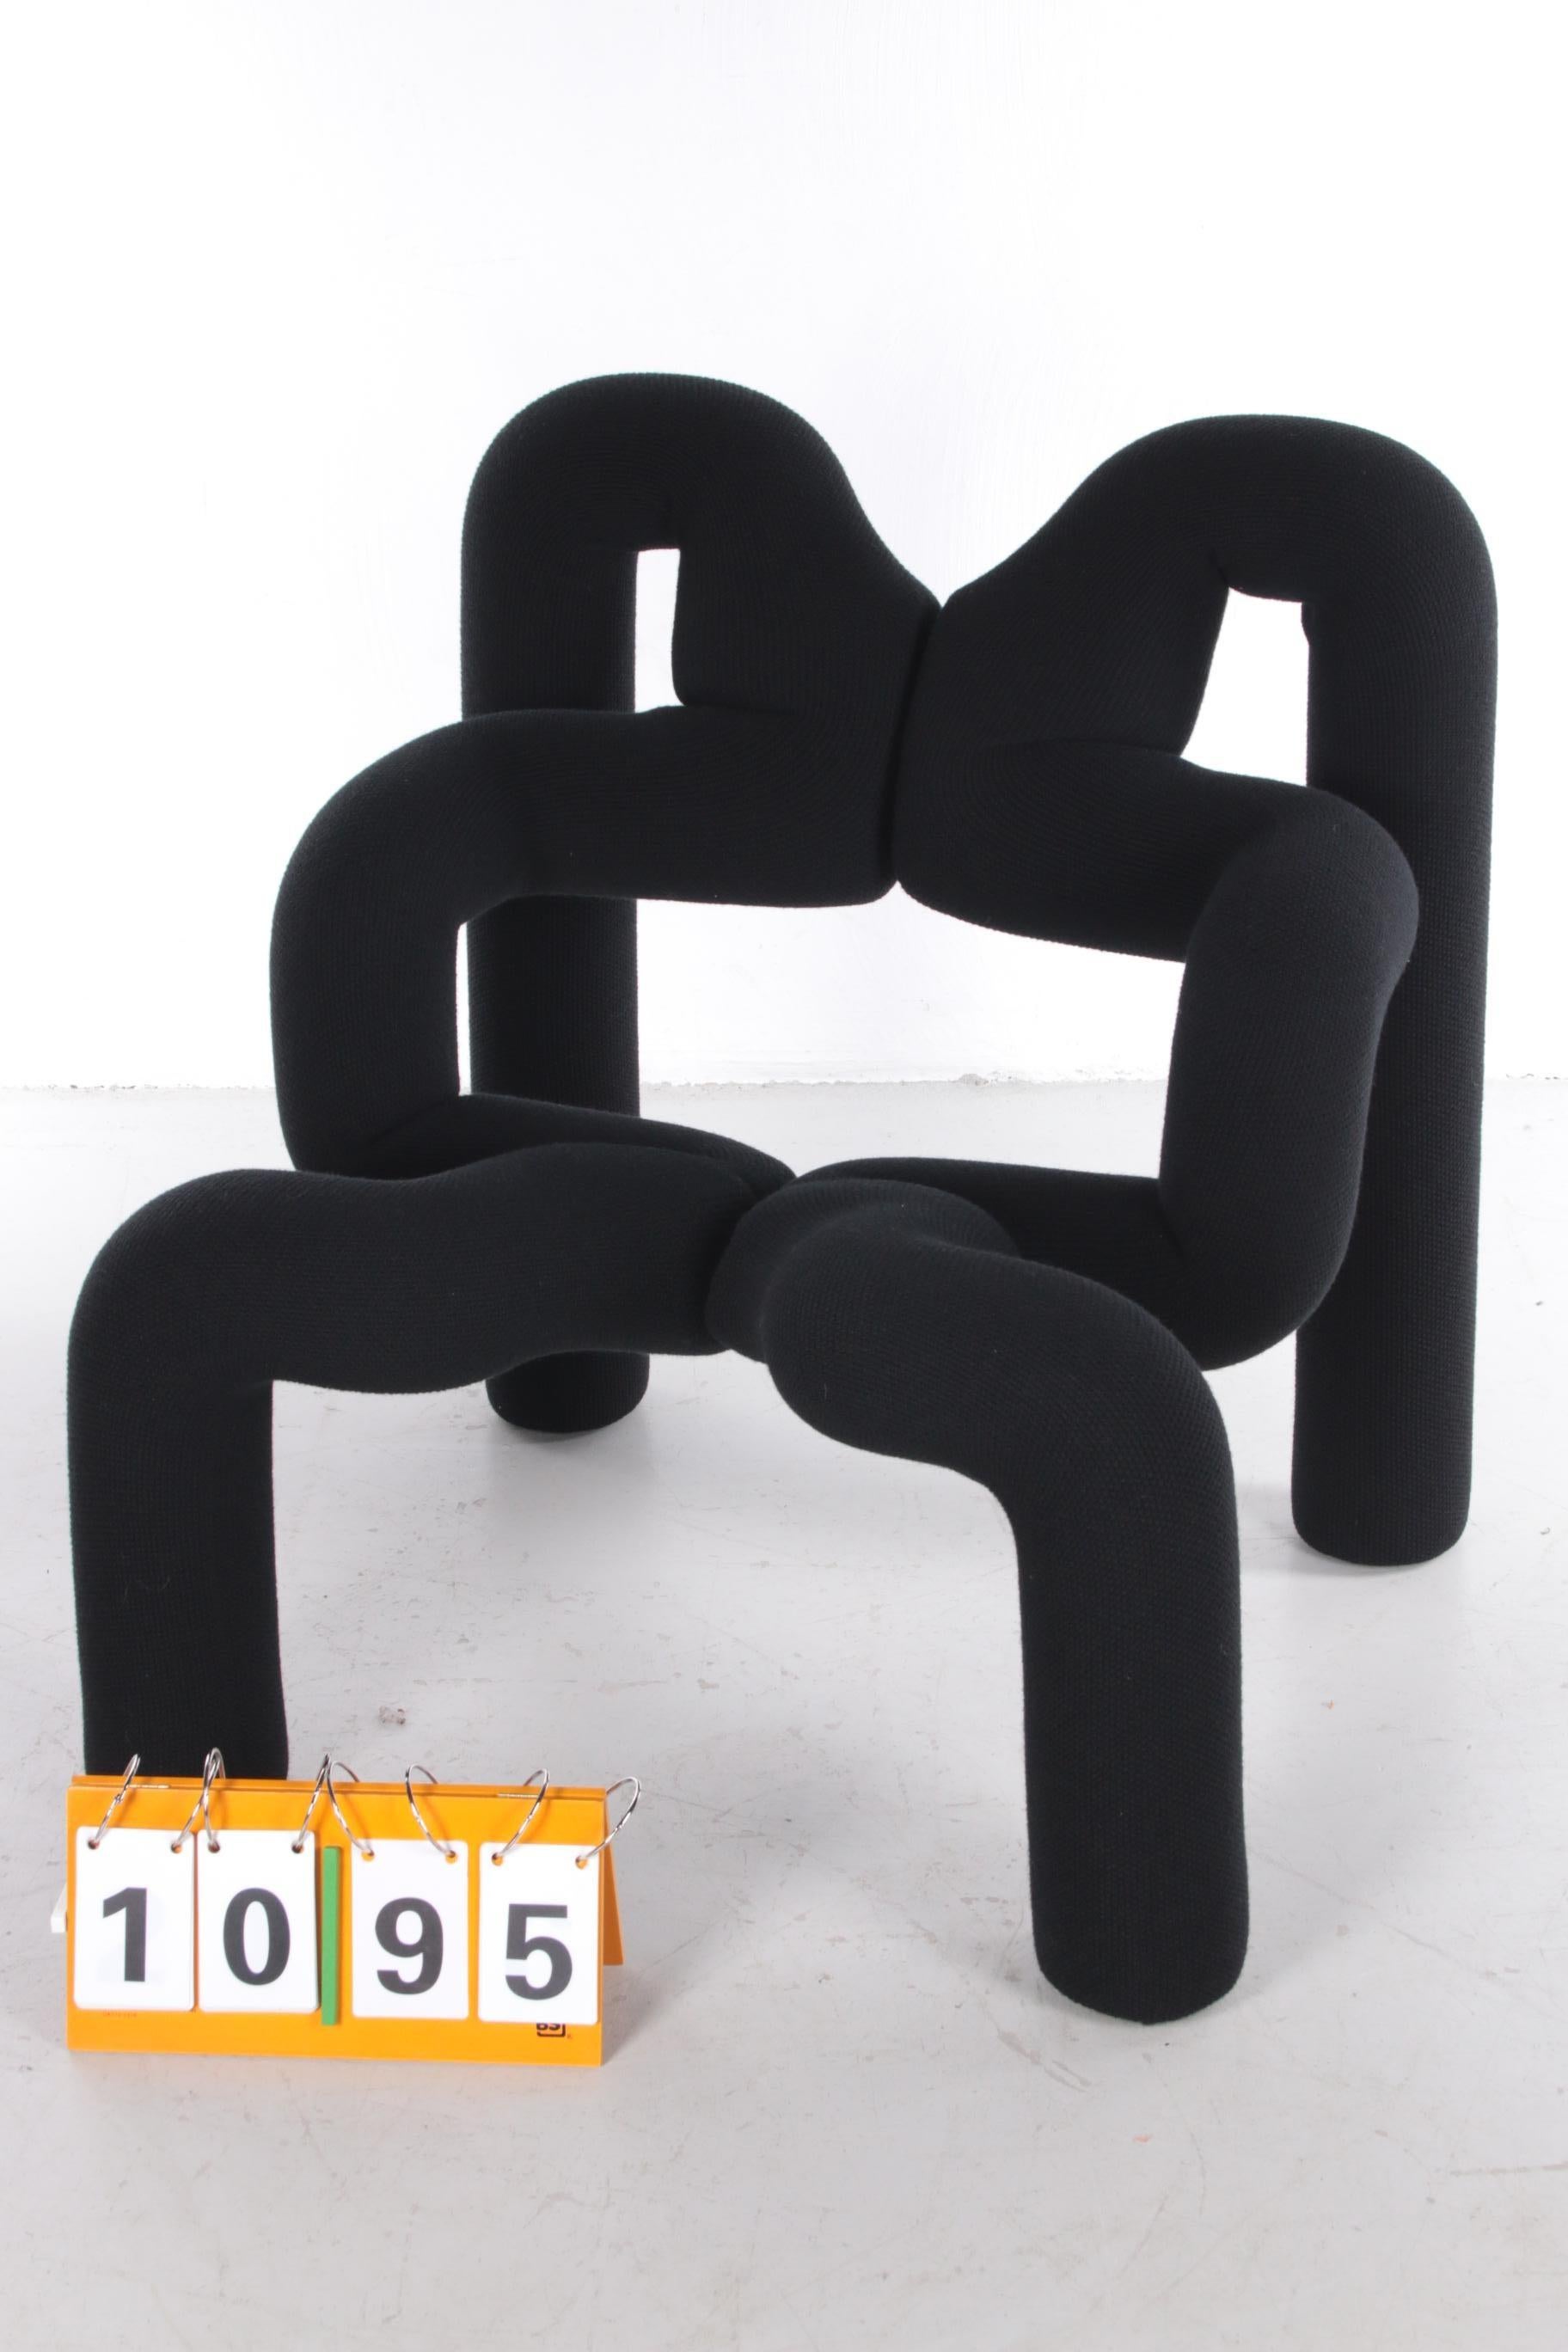 ekstrem chair used